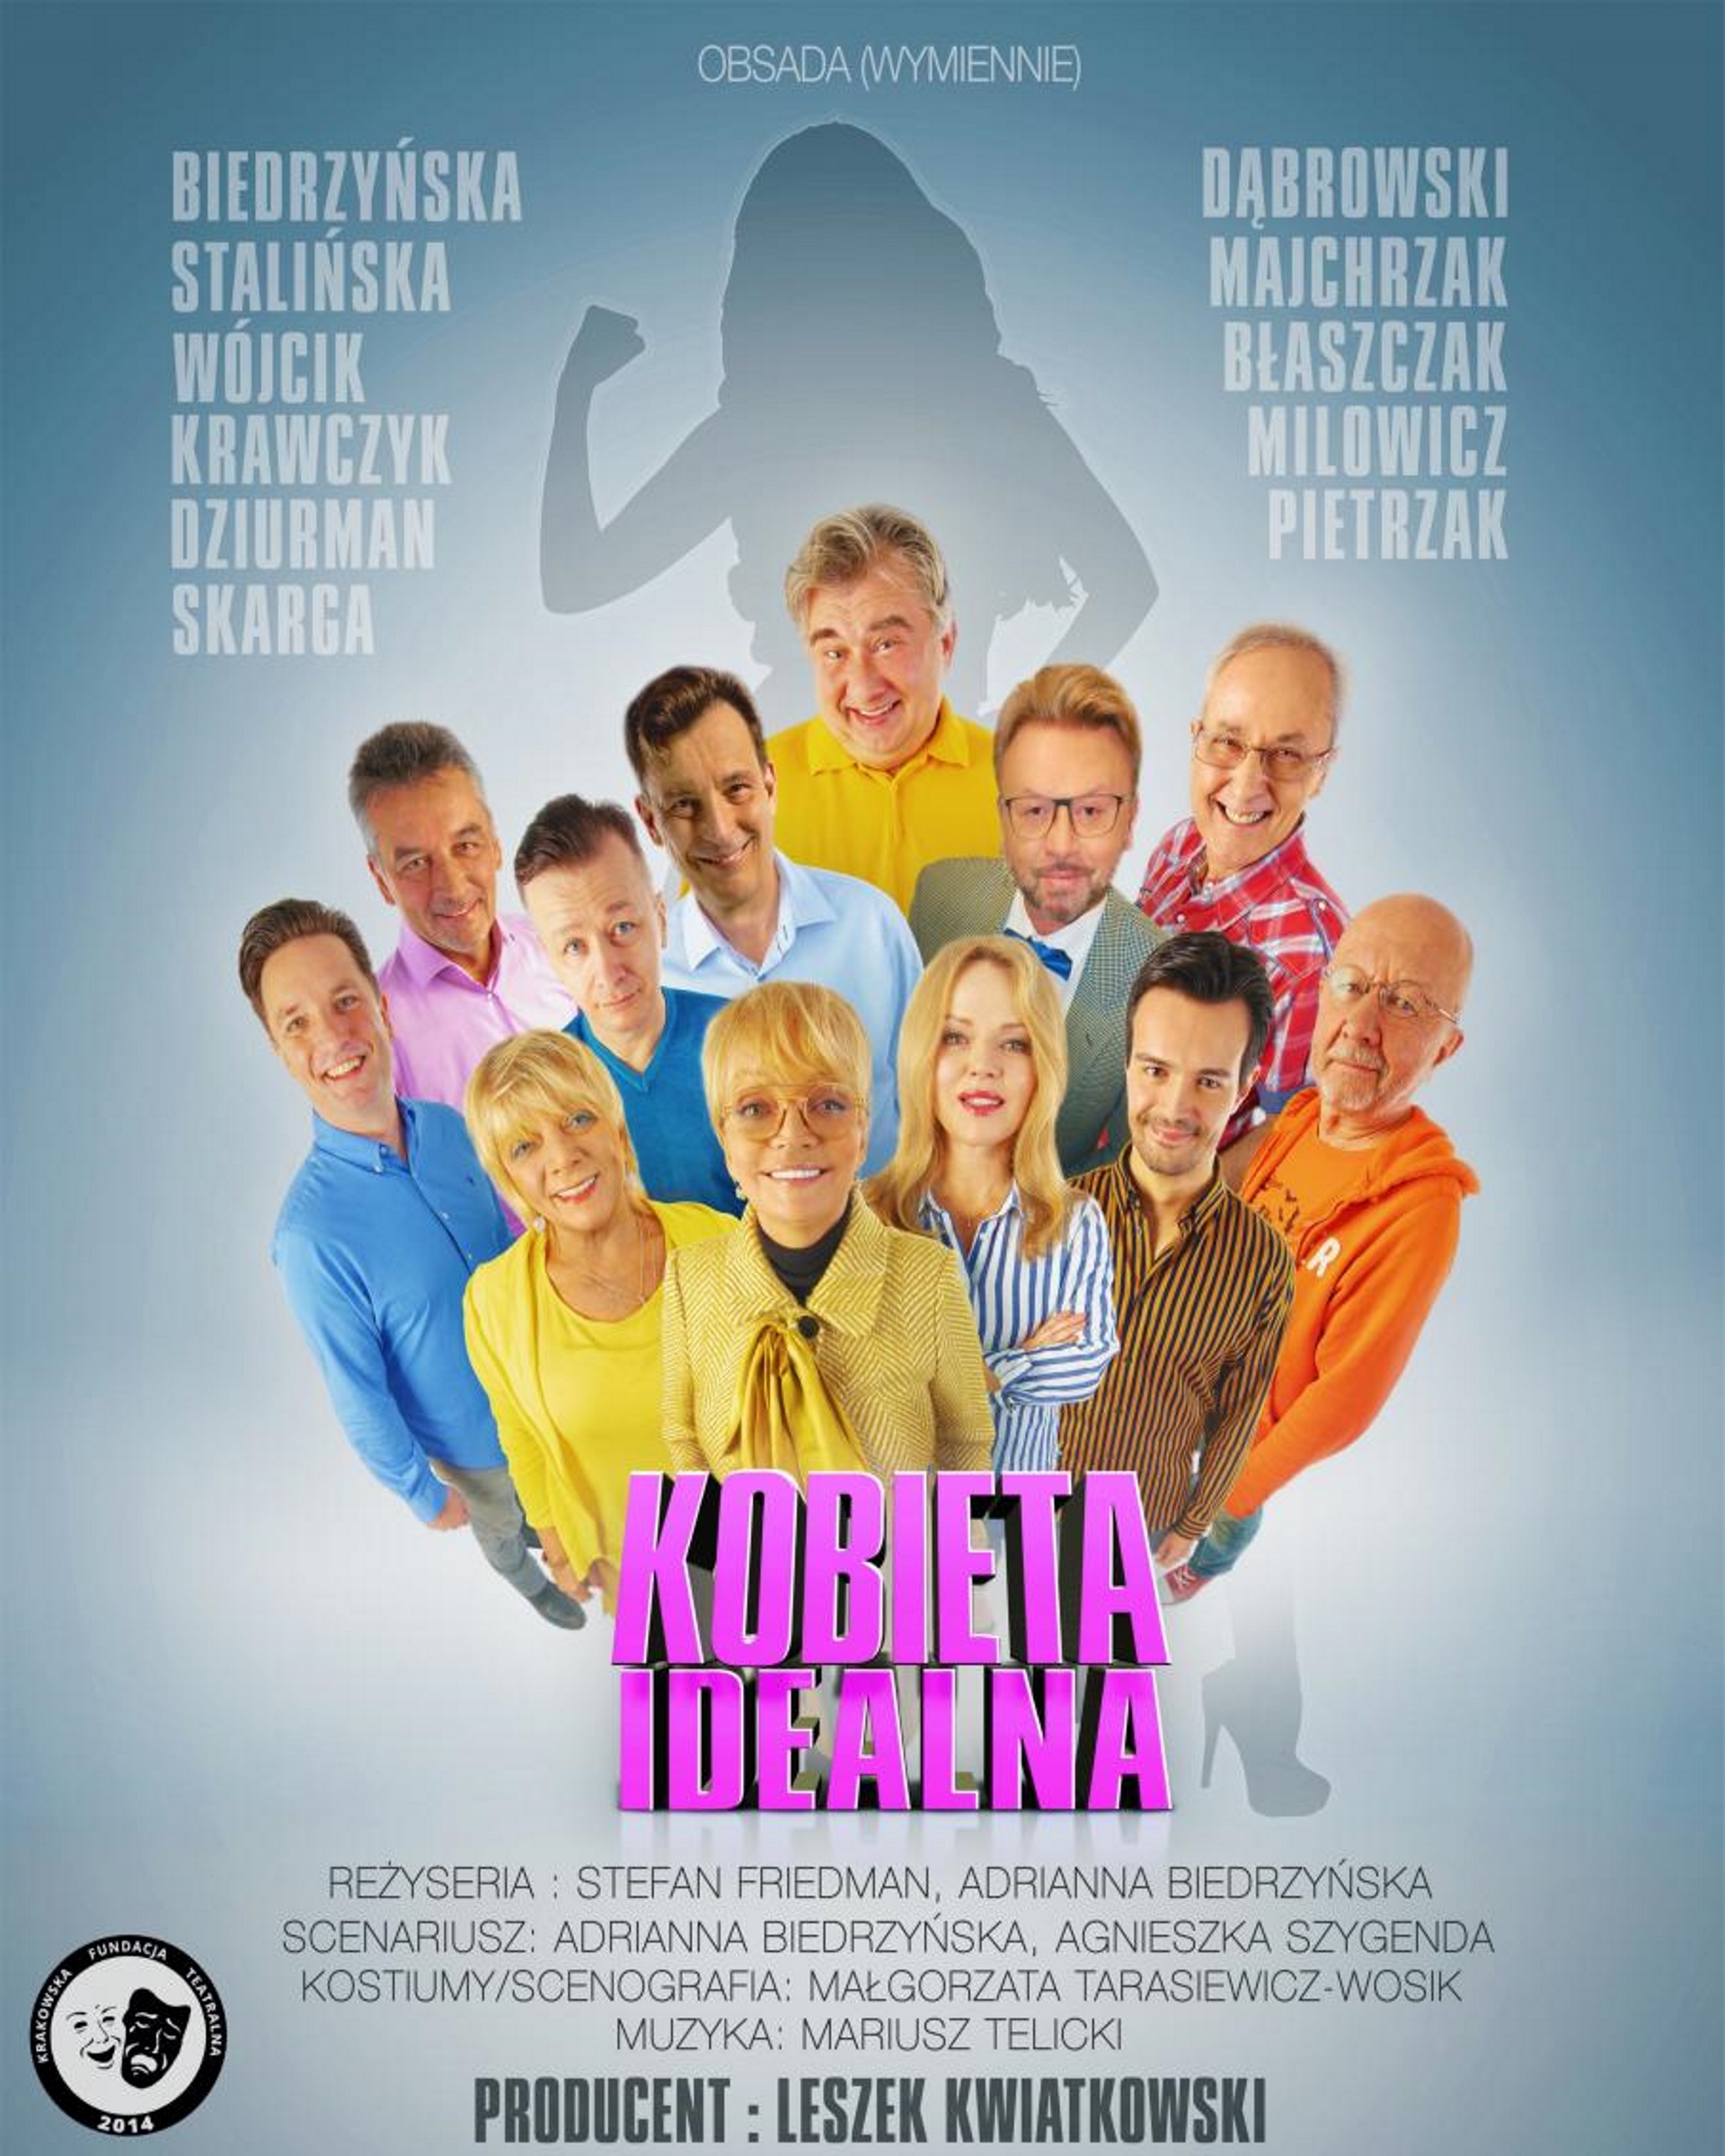 Plakat zapraszający na spektakl komediowy Kobieta Idealna do Elbląga. Na plakacie postacie artystów występujących w przedstawieniu.  